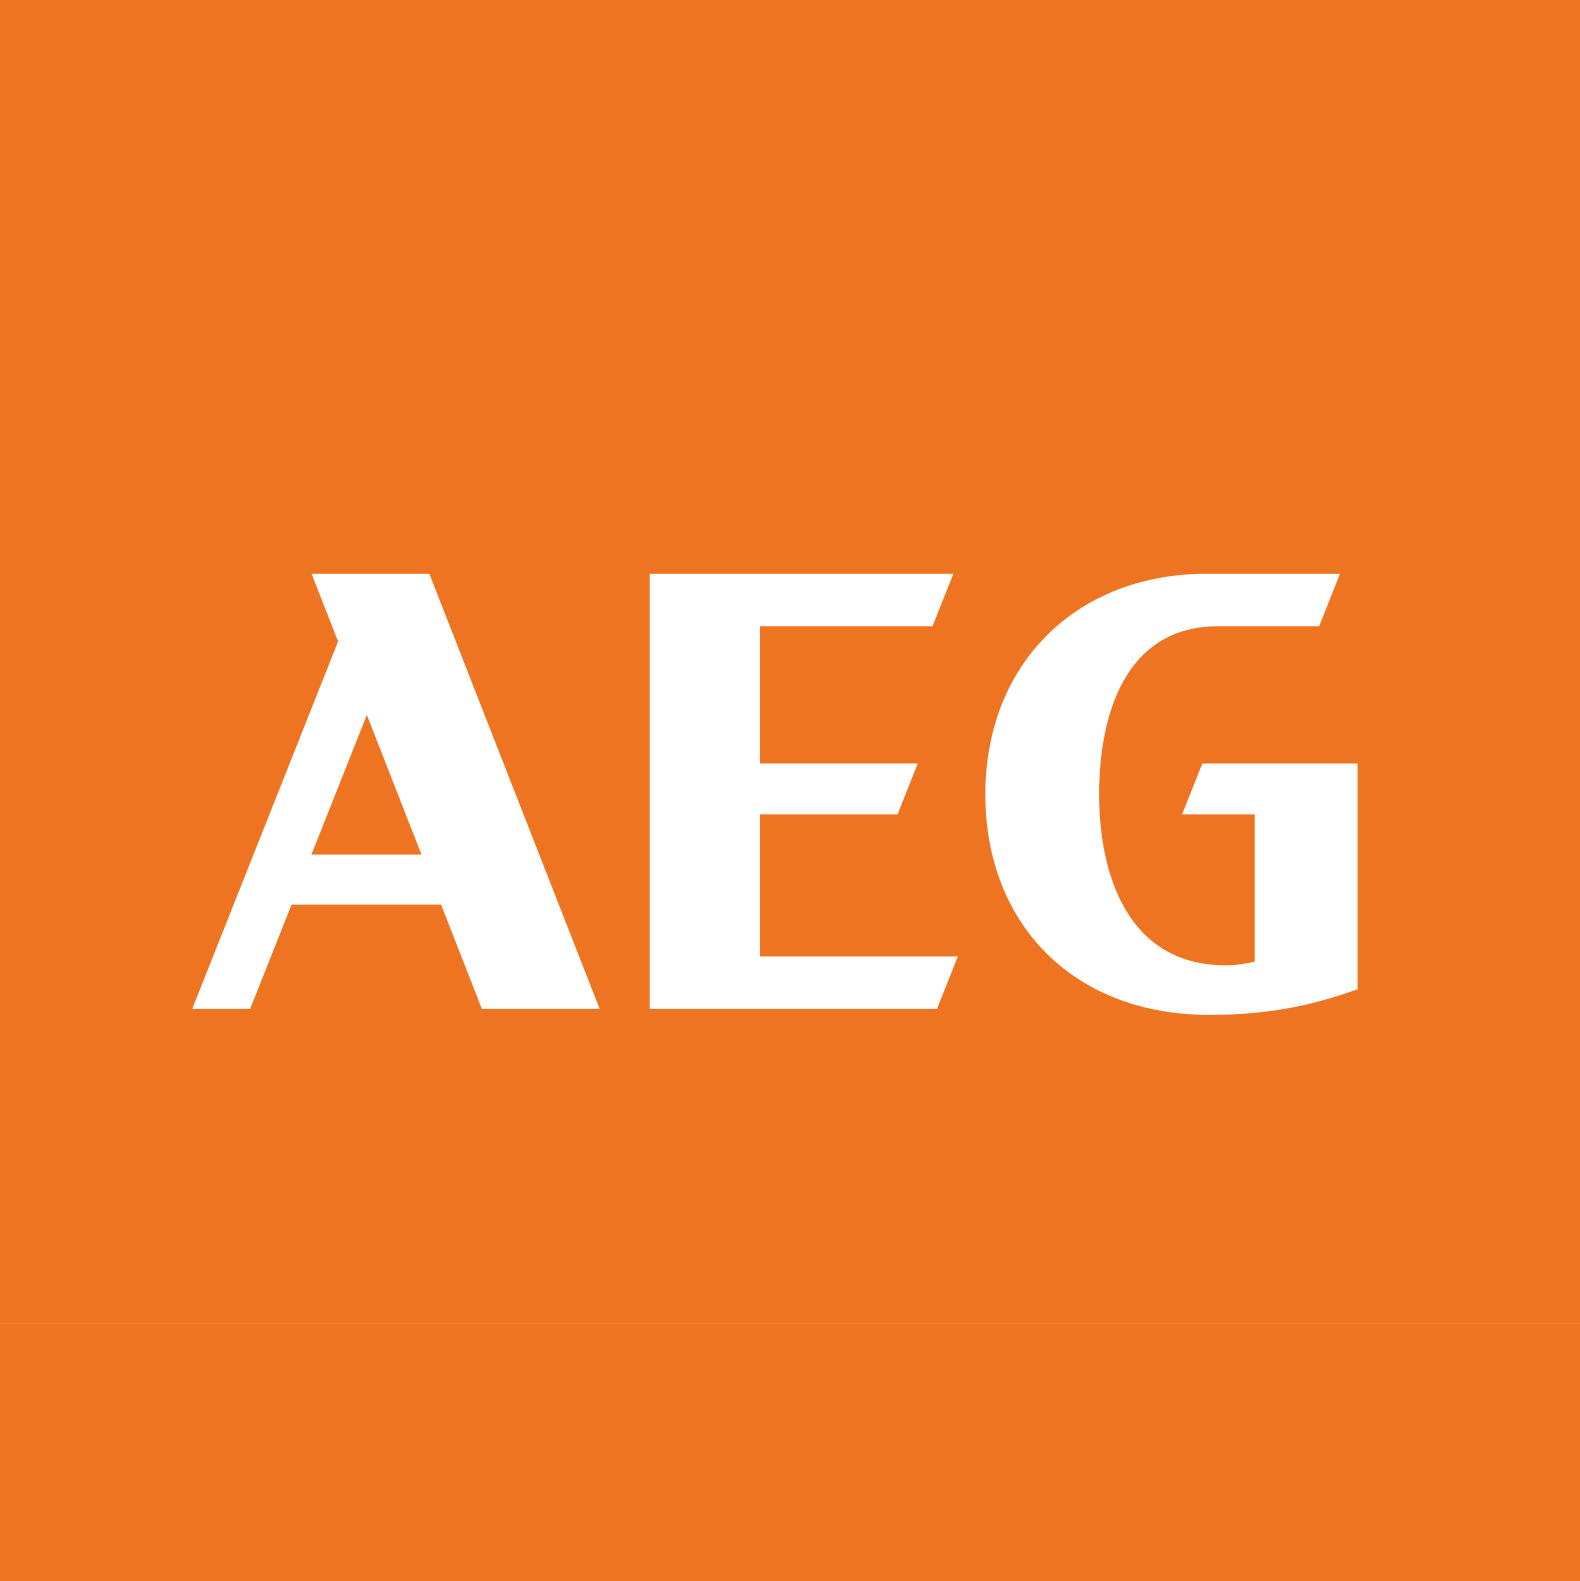 AEG Power Tools